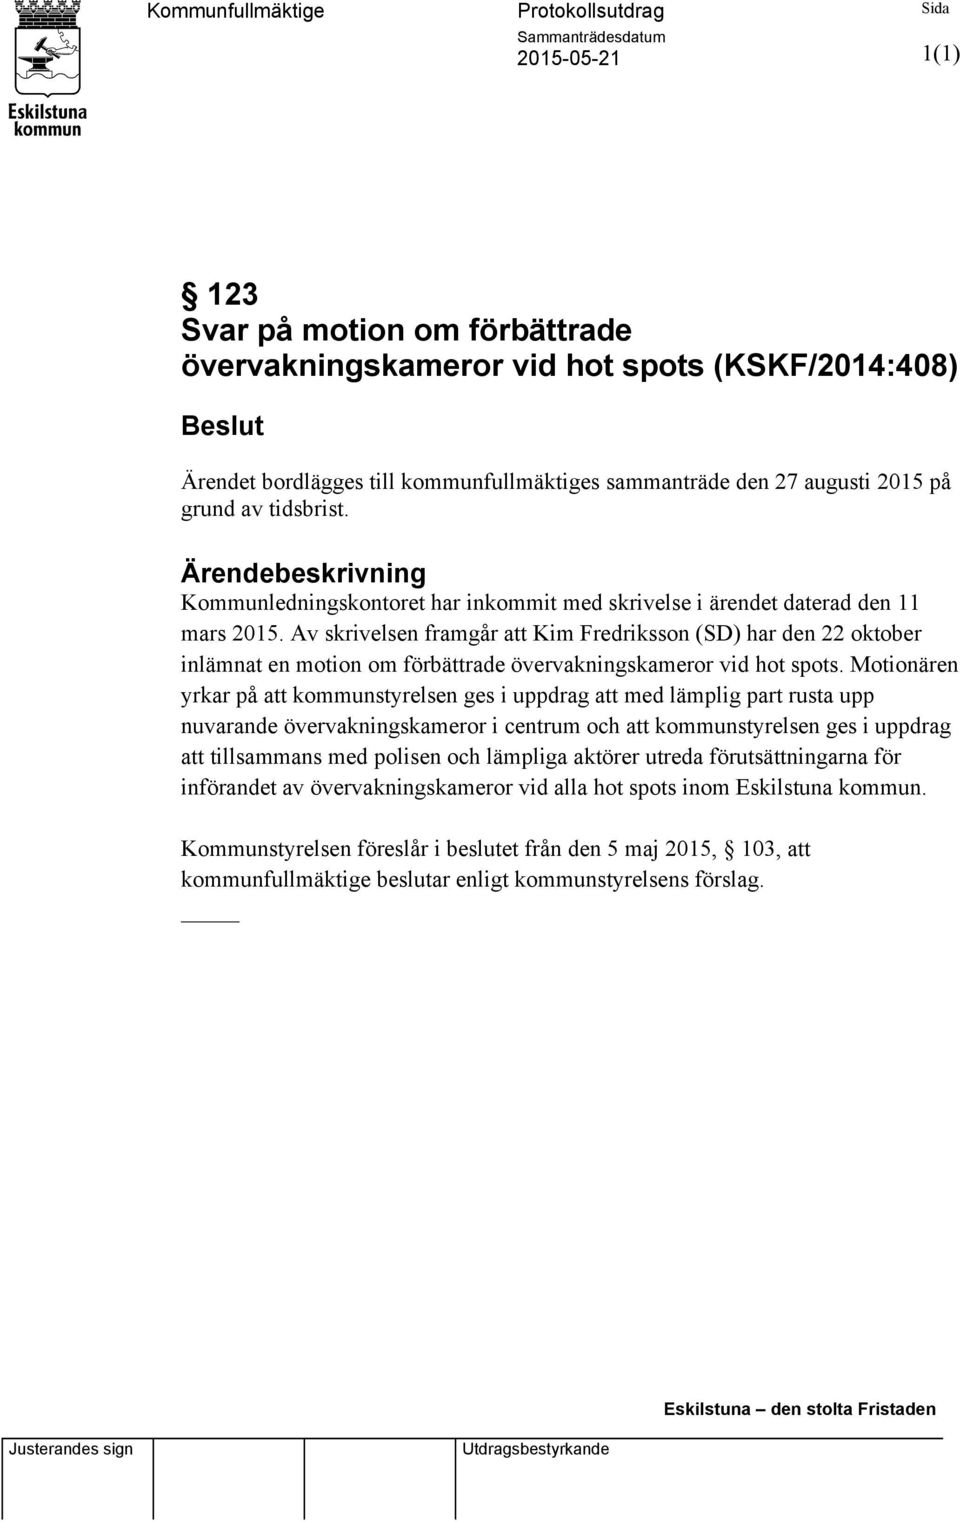 Av skrivelsen framgår att Kim Fredriksson (SD) har den 22 oktober inlämnat en motion om förbättrade övervakningskameror vid hot spots.